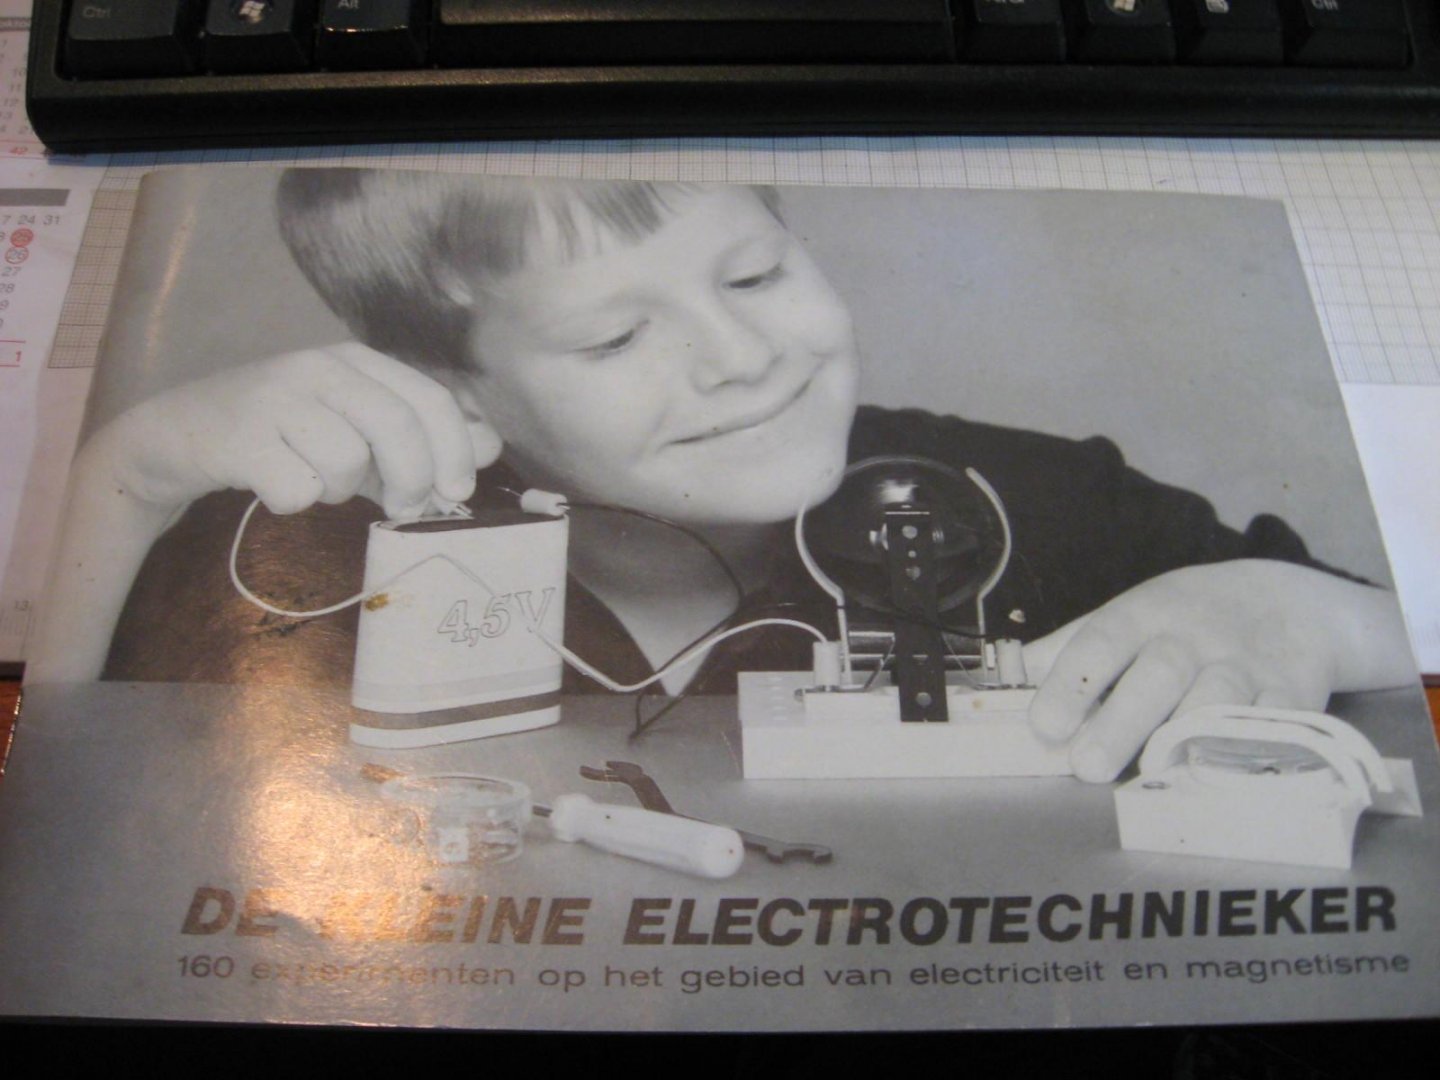 onbekend - De kleine electrotechnieker- 160 experimenten op het gebied van electriciteit en magnetisme